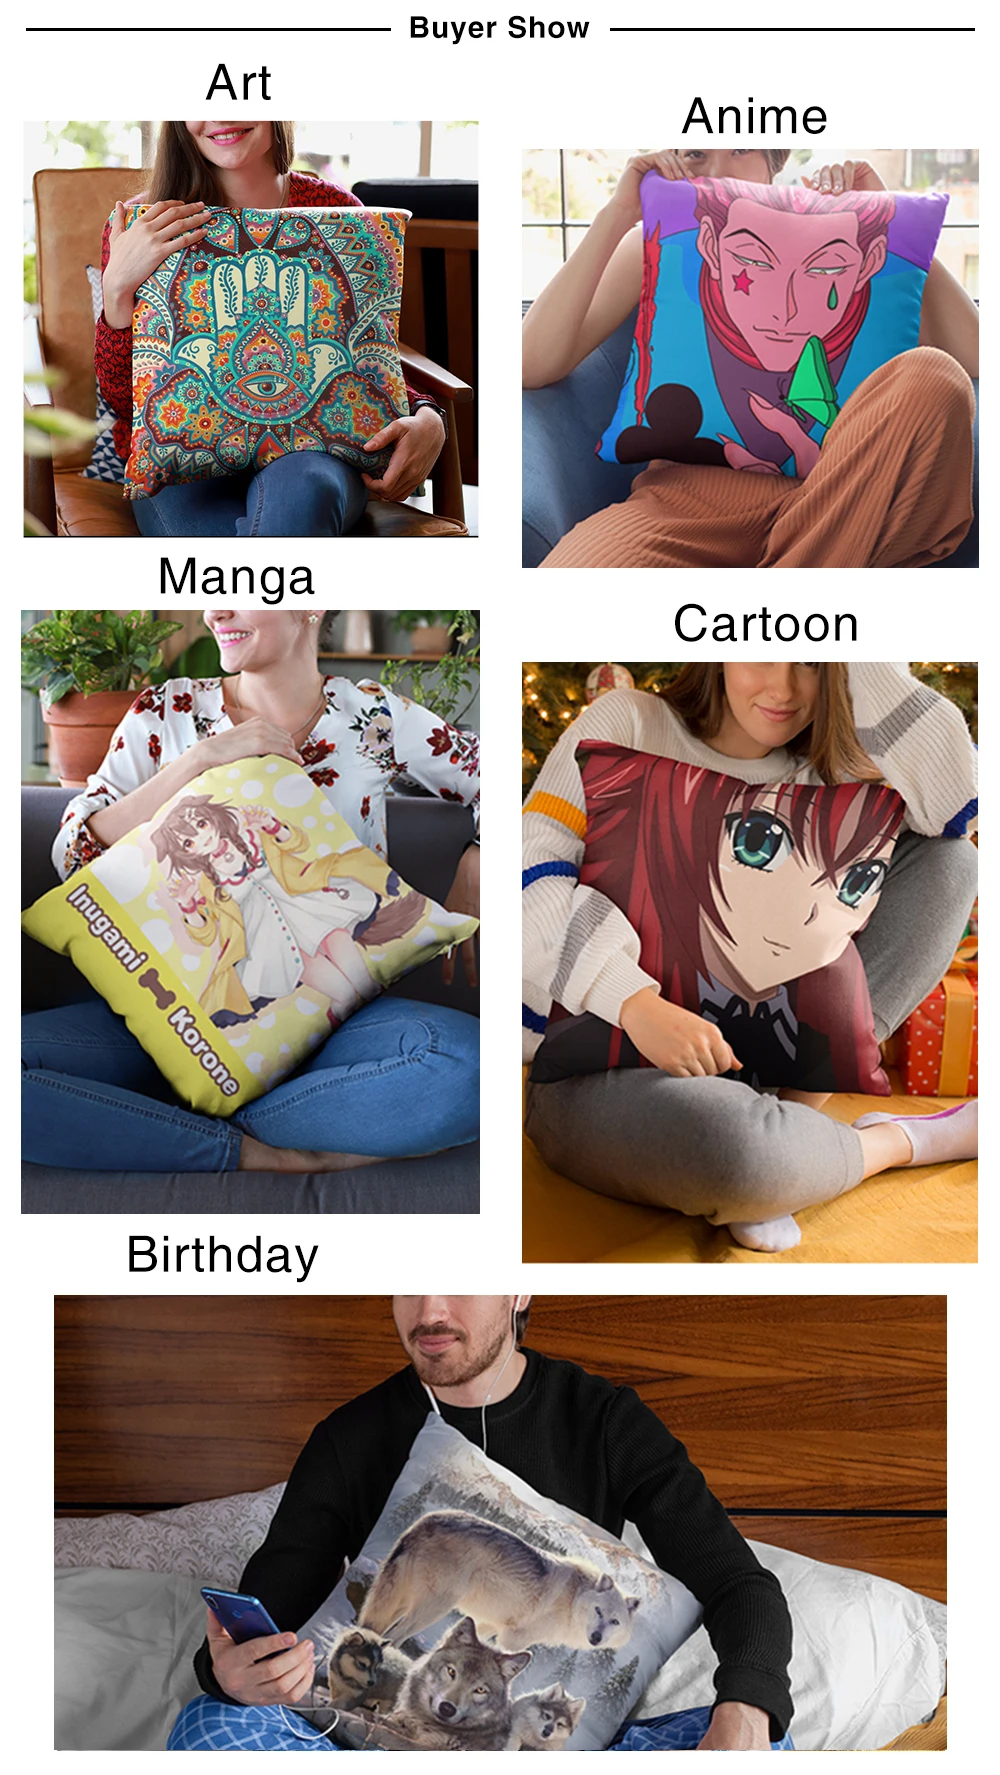 Anime Soft Plush HUNTER X HUNTER Printed Pillow Case for Home Sofa Car Decor Cute Girls Cushion Cover Throw Pillowcase